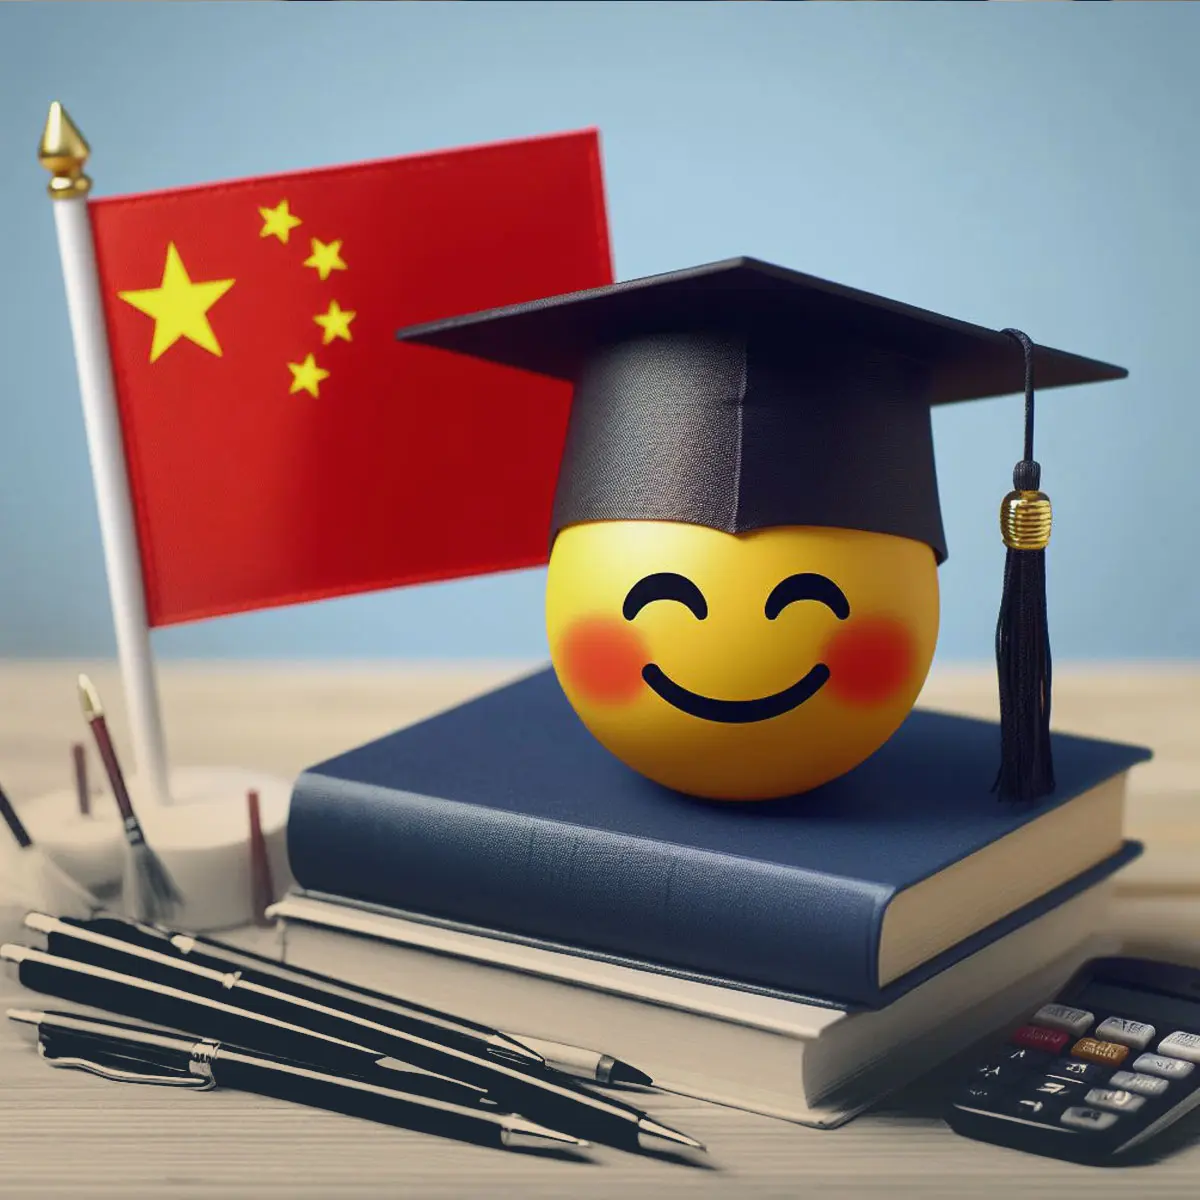 مزایای اخذ مدرک دکتری از چین